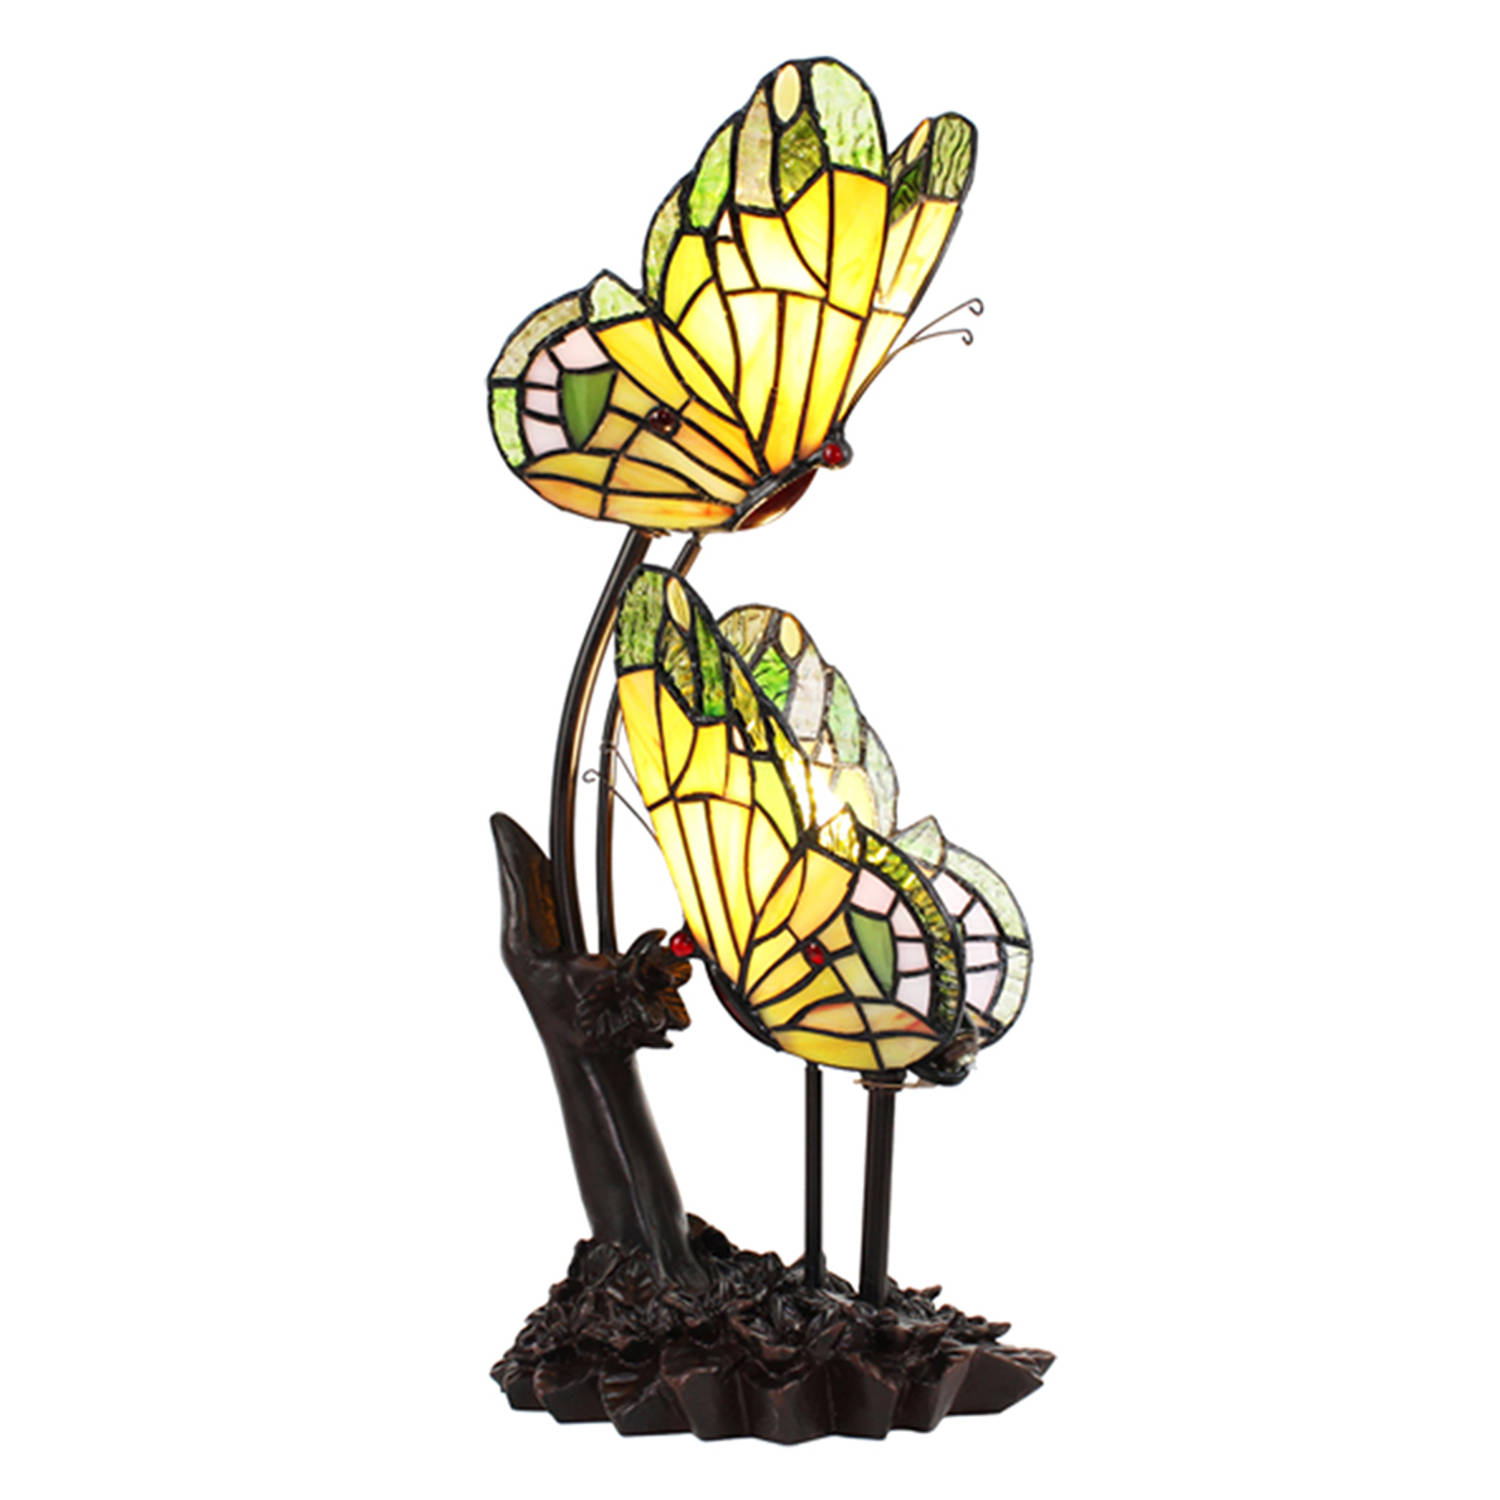 HAES DECO - Tiffany Tafellamp Vlinder 24x17x47 cm Geel Glas Tiffany Bureaulamp Tiffany Lampen Glas in Lood